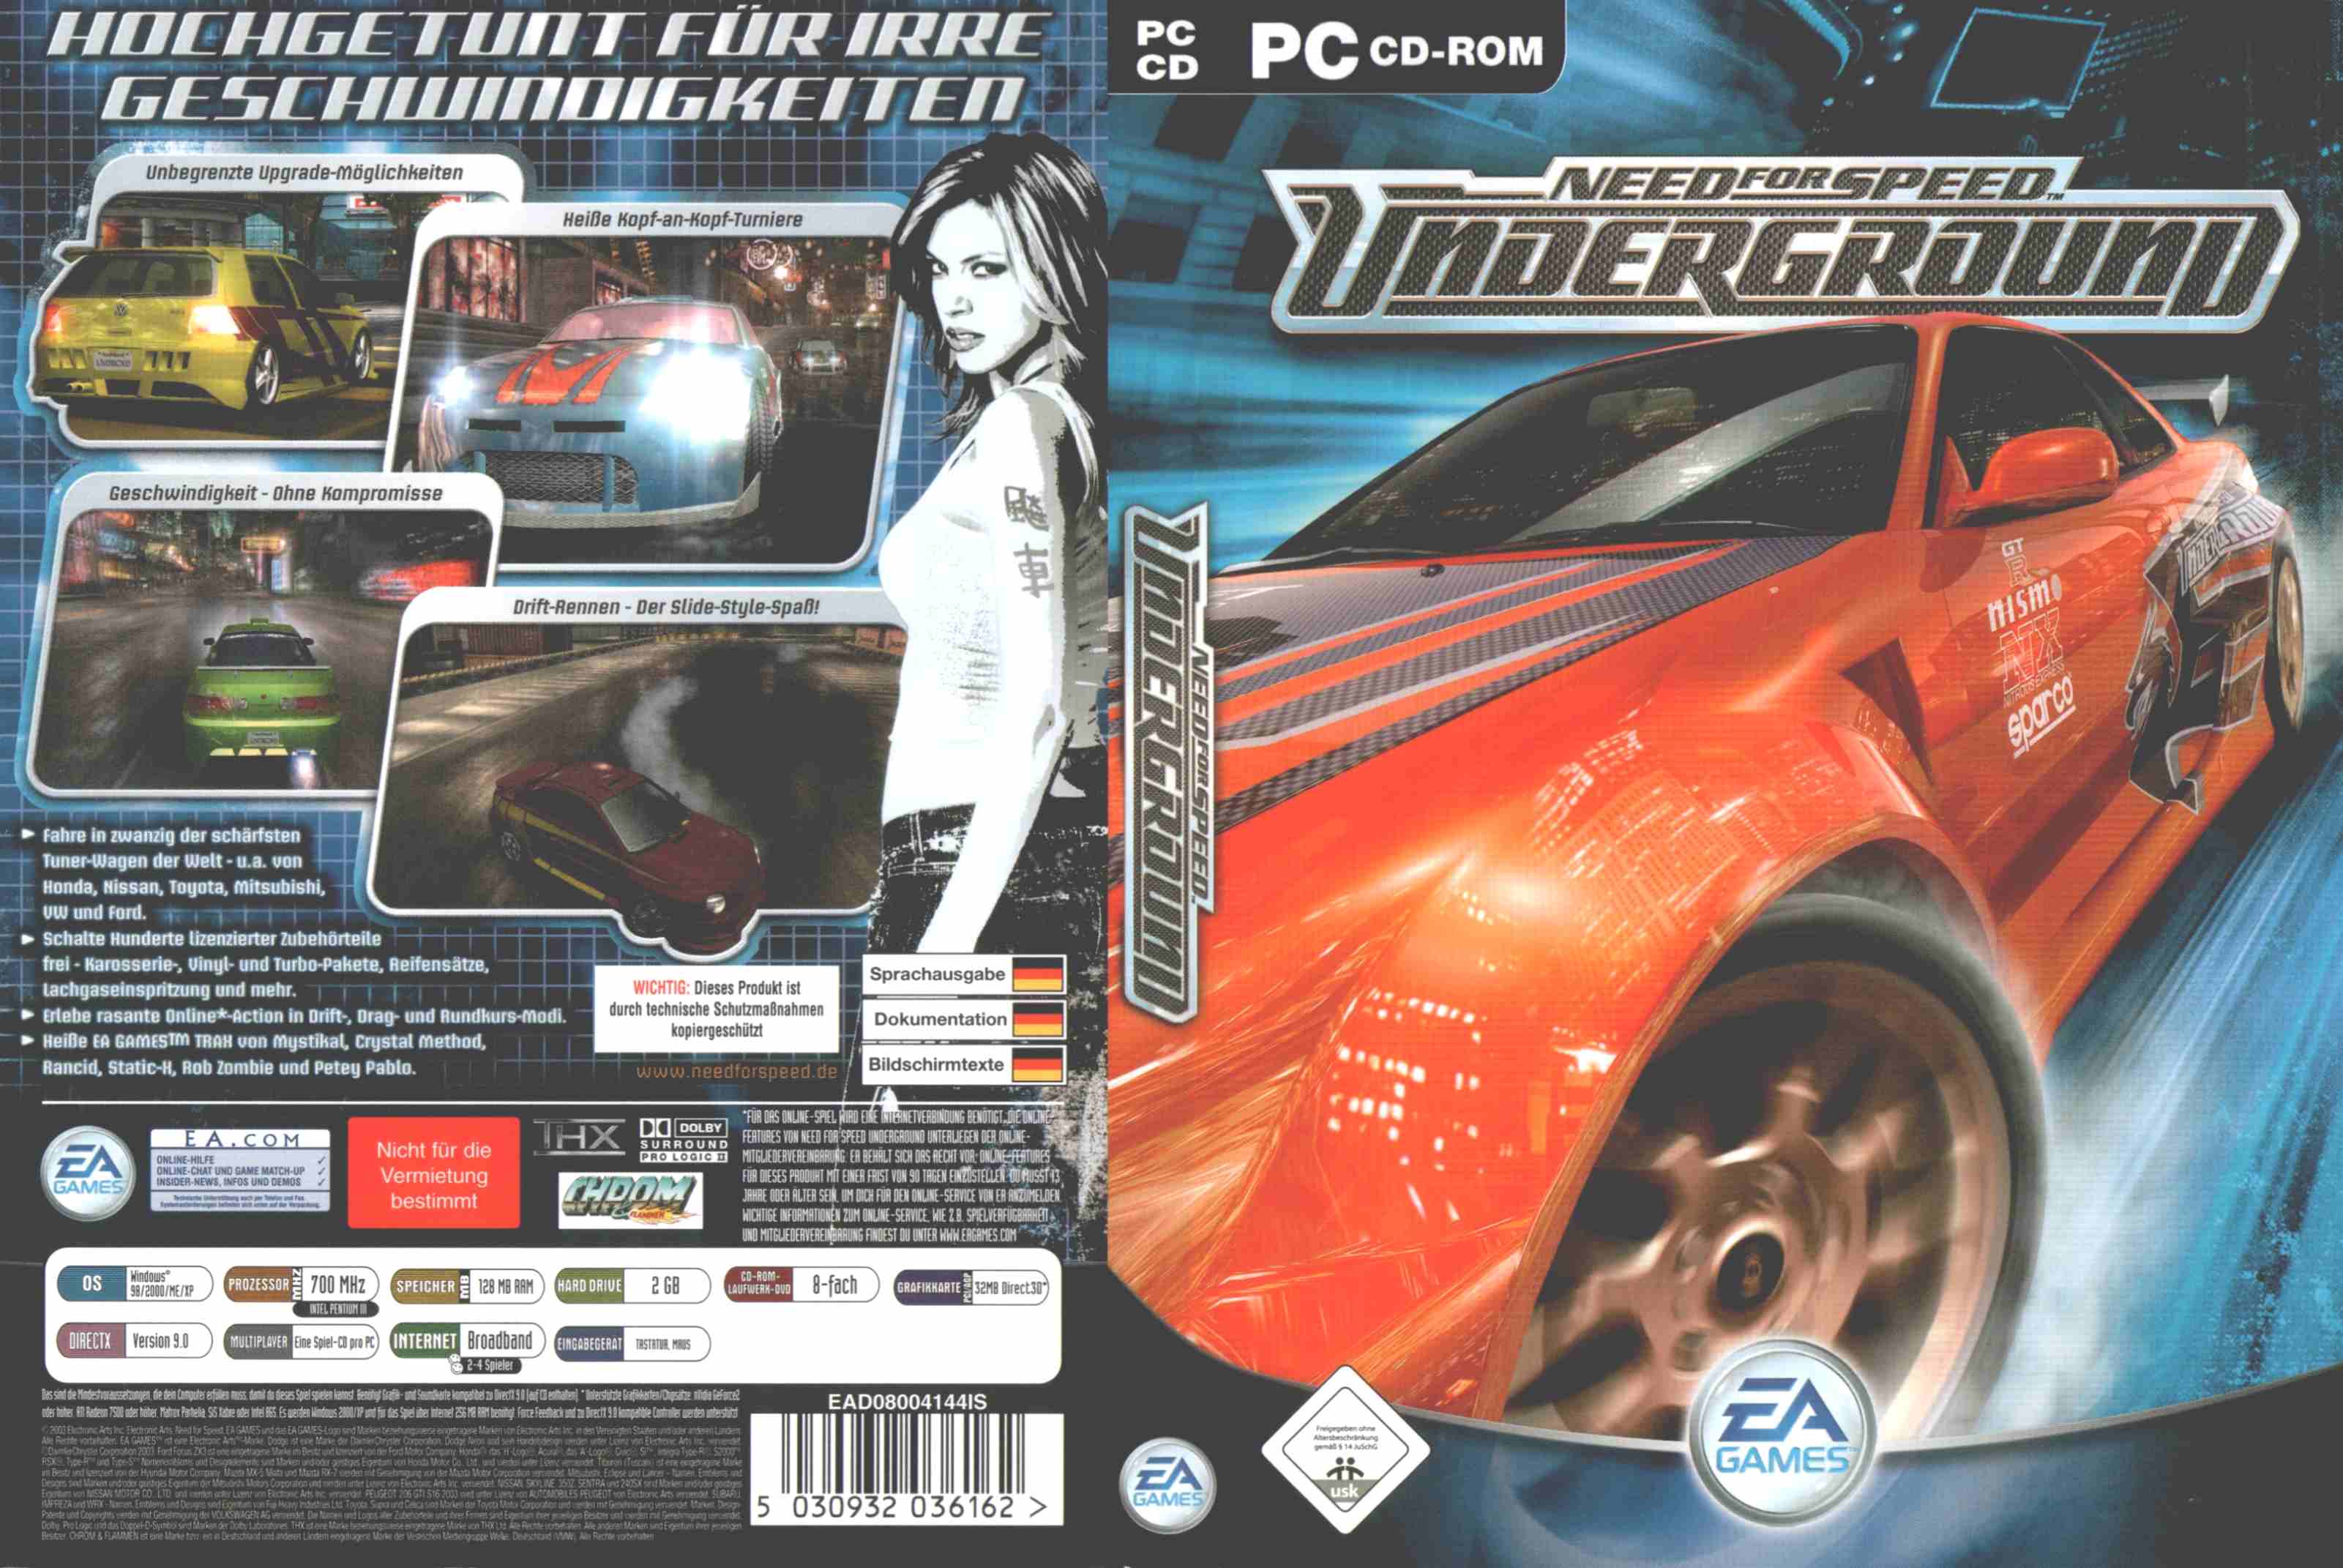 Need for speed underground сохранение. Need for Speed Underground диск. Need for Speed Underground 2 диск PC. NFS Underground 1 диски. Need for Speed 2003 обложка.